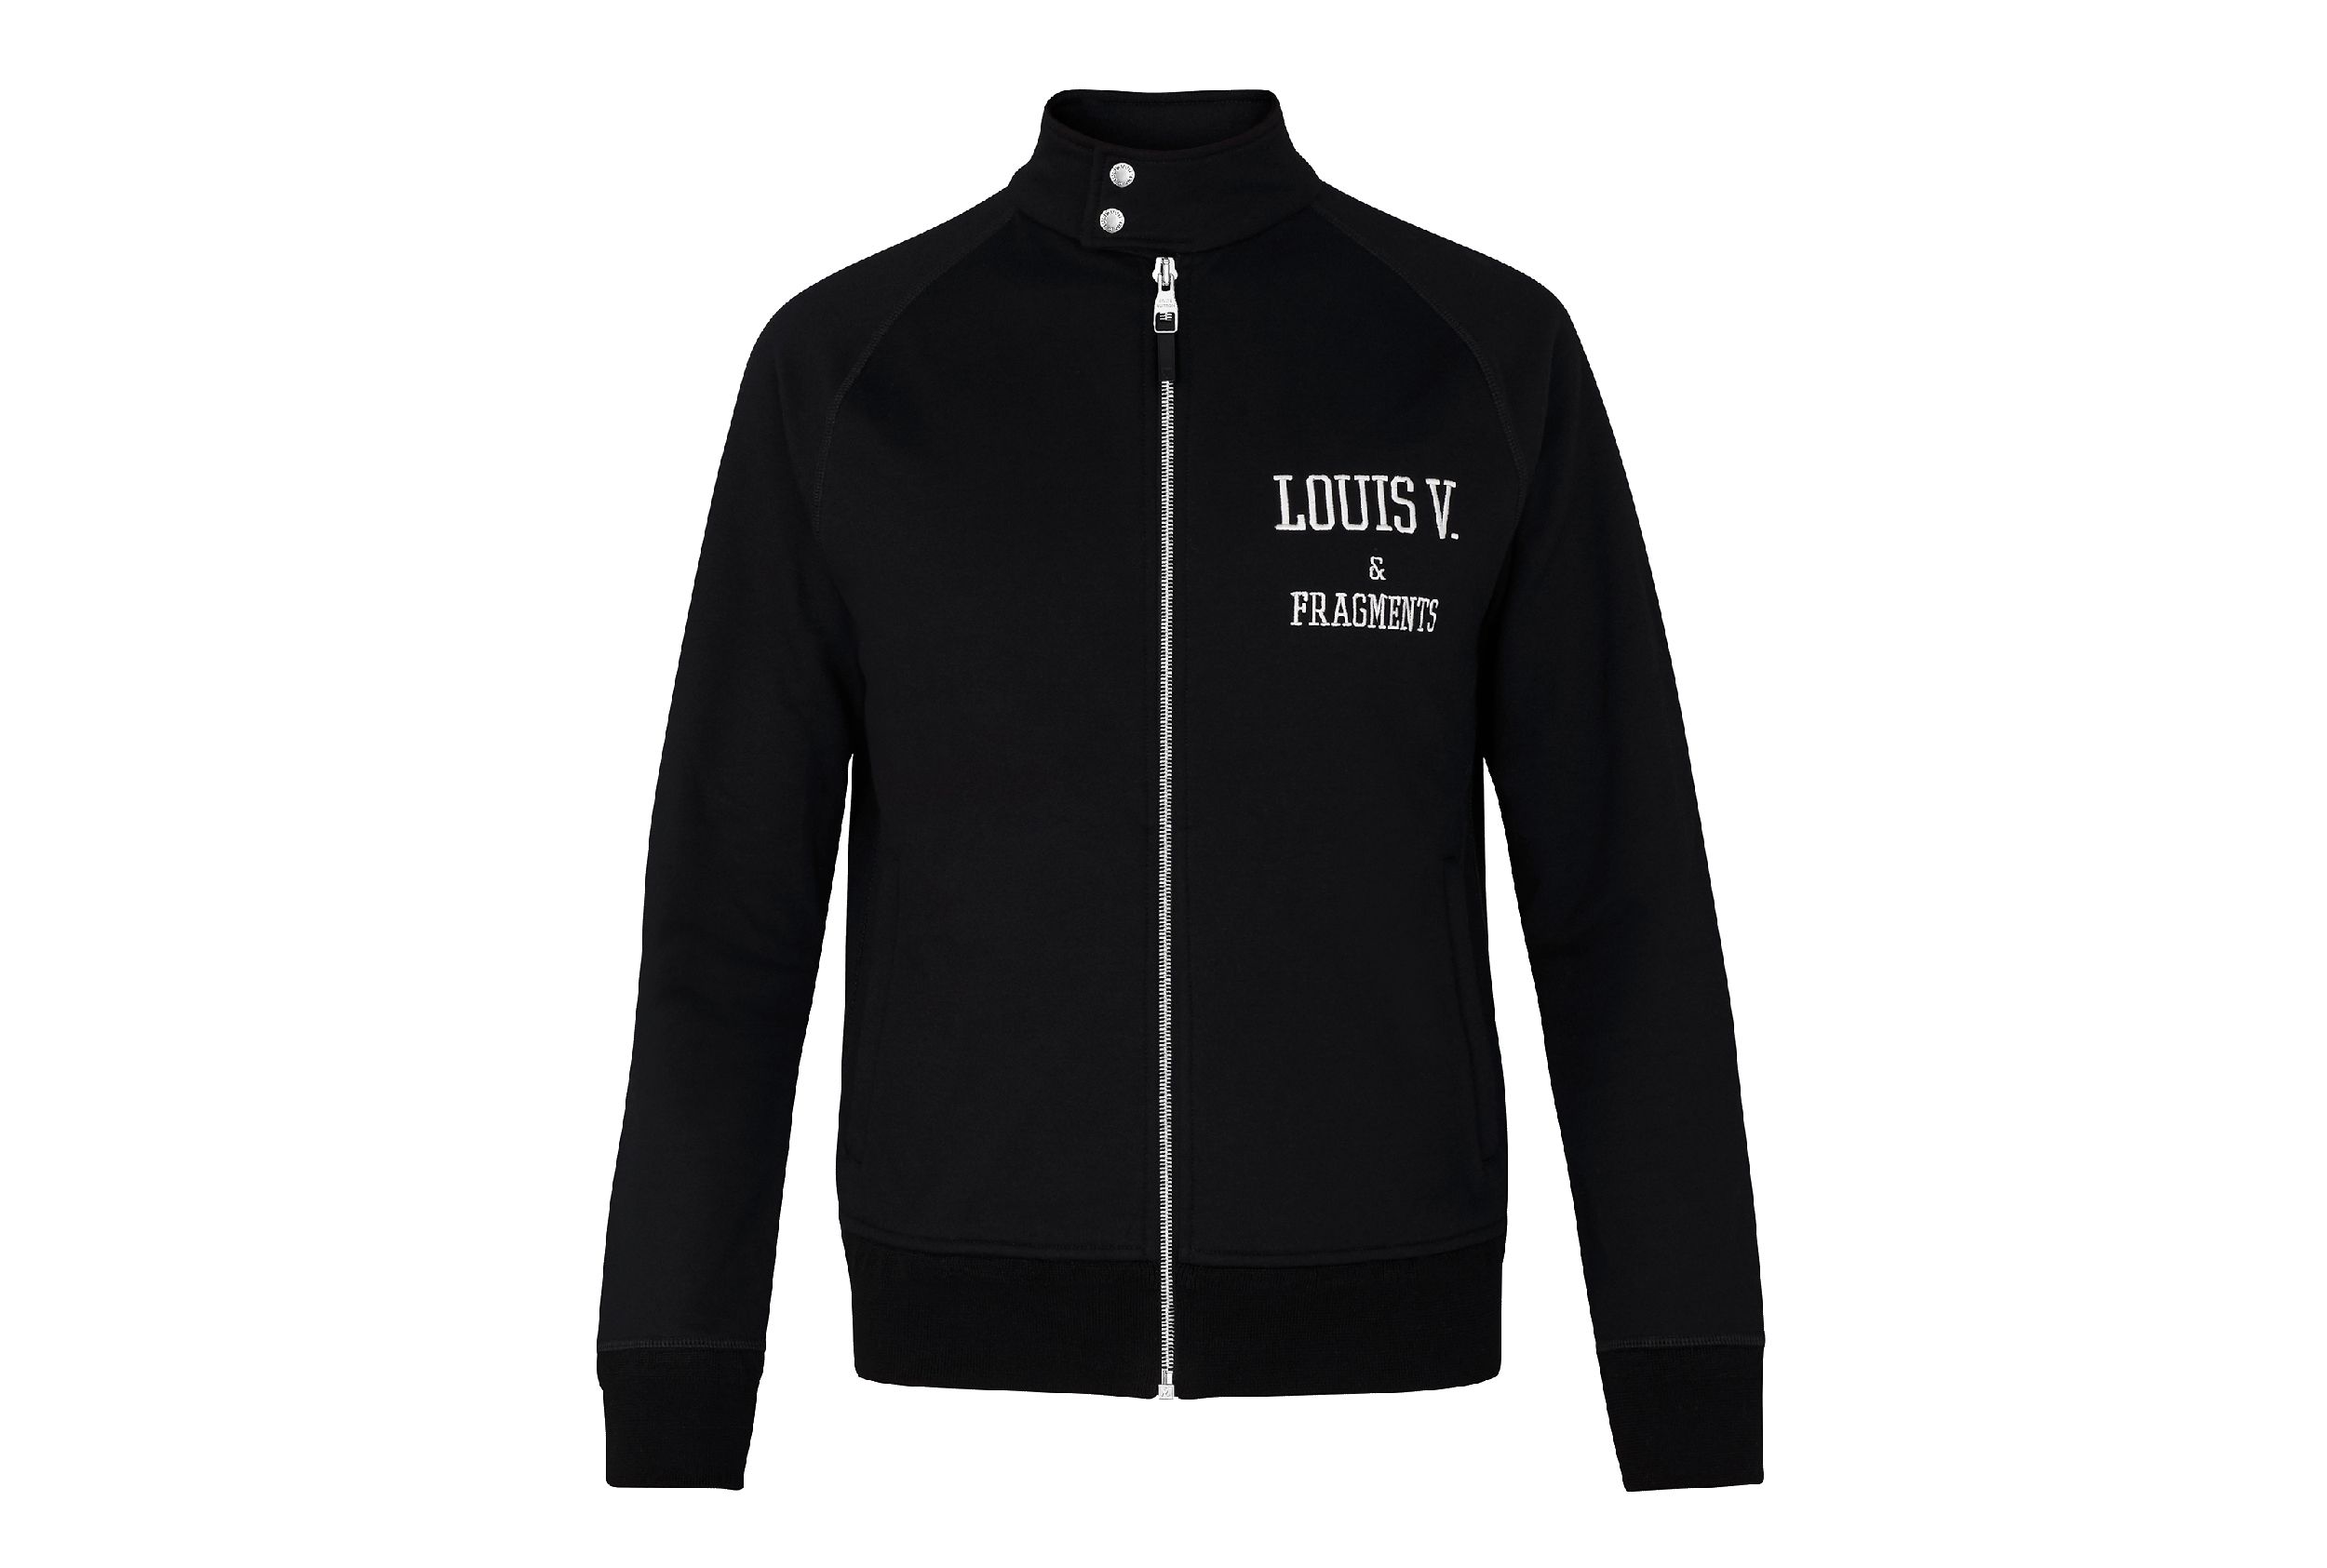 Louis Vuitton x Fragment - Authenticated Jacket - Cotton Black Plain For Man, Good condition